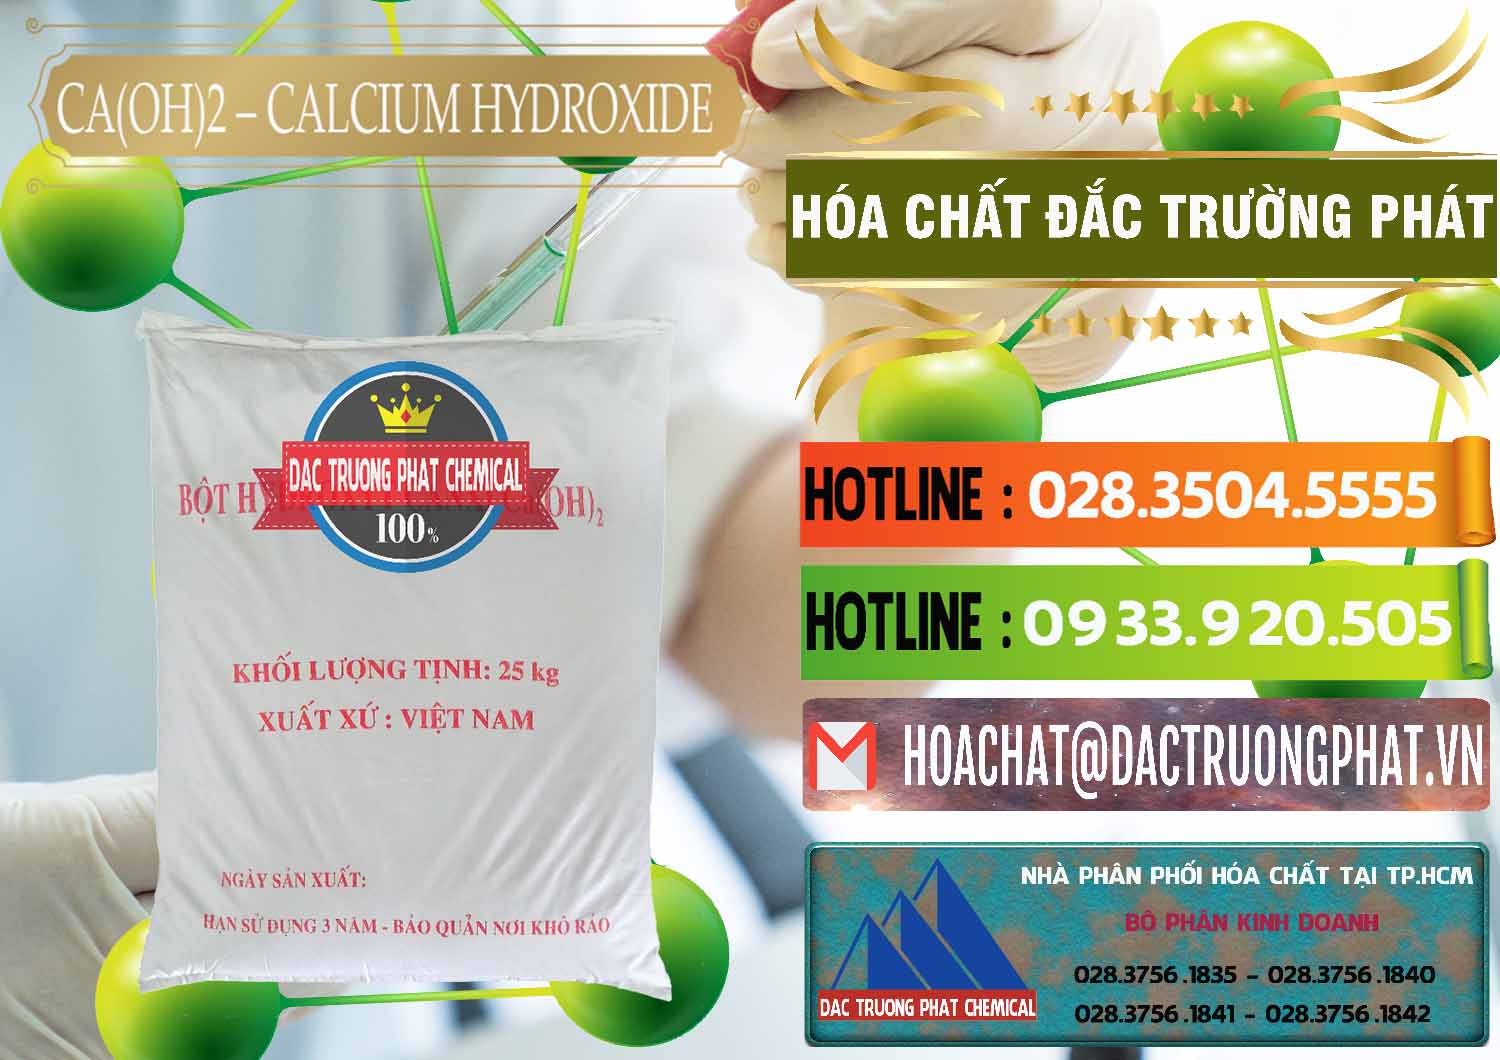 Bán và cung ứng Ca(OH)2 - Calcium Hydroxide Việt Nam - 0186 - Chuyên cung cấp và phân phối hóa chất tại TP.HCM - cungcaphoachat.com.vn